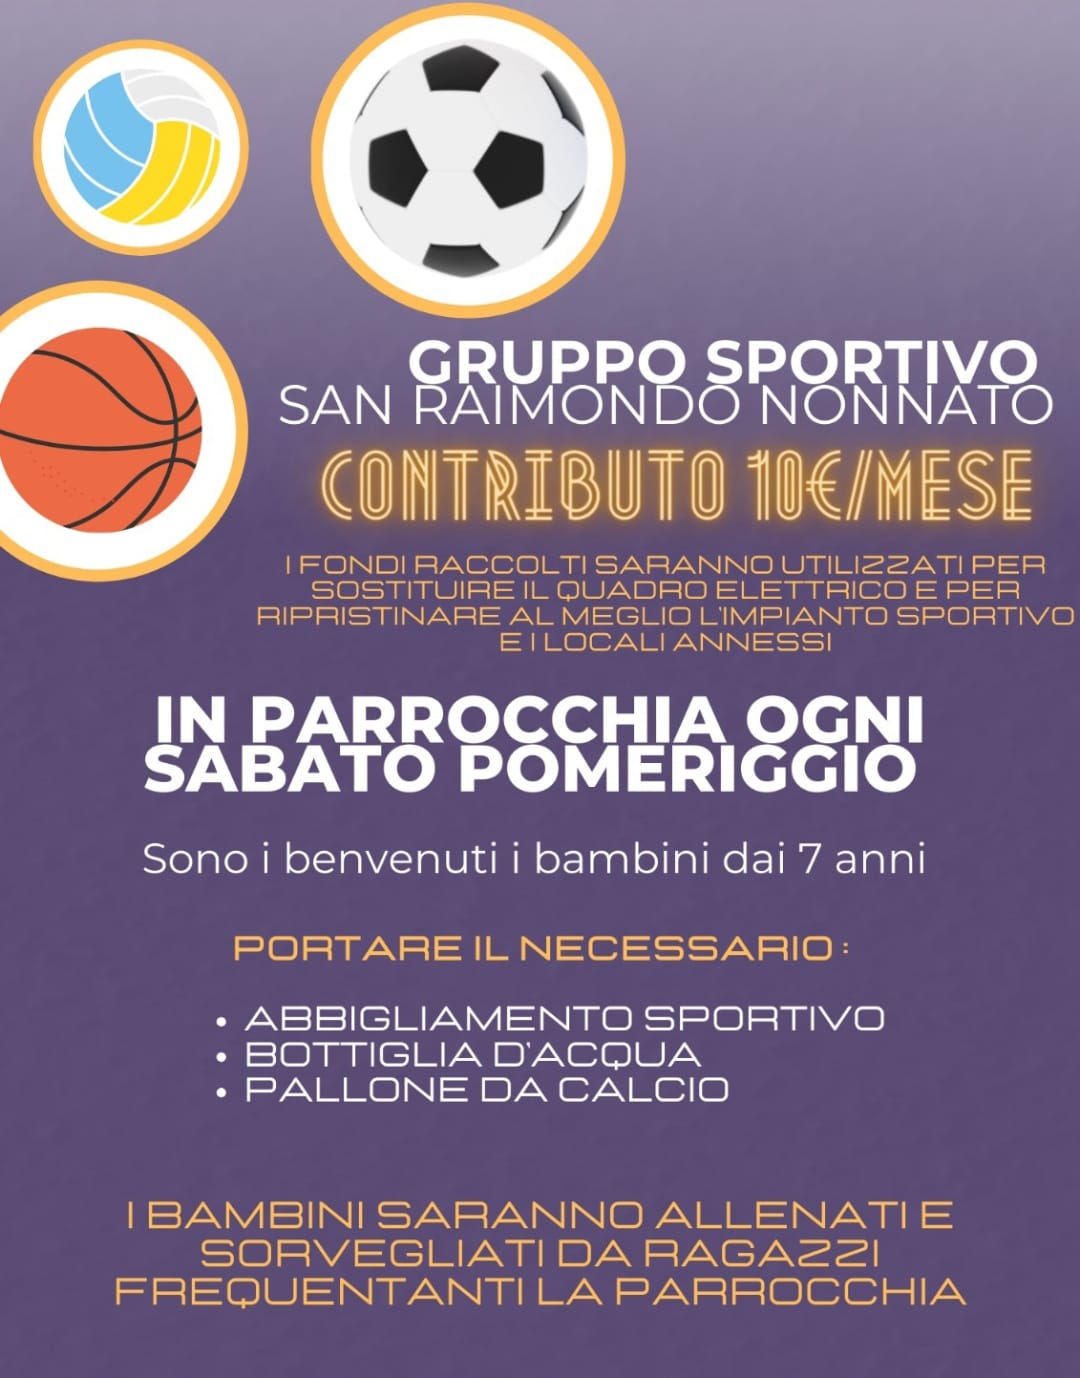 Gruppo Sportivo San Raimondo